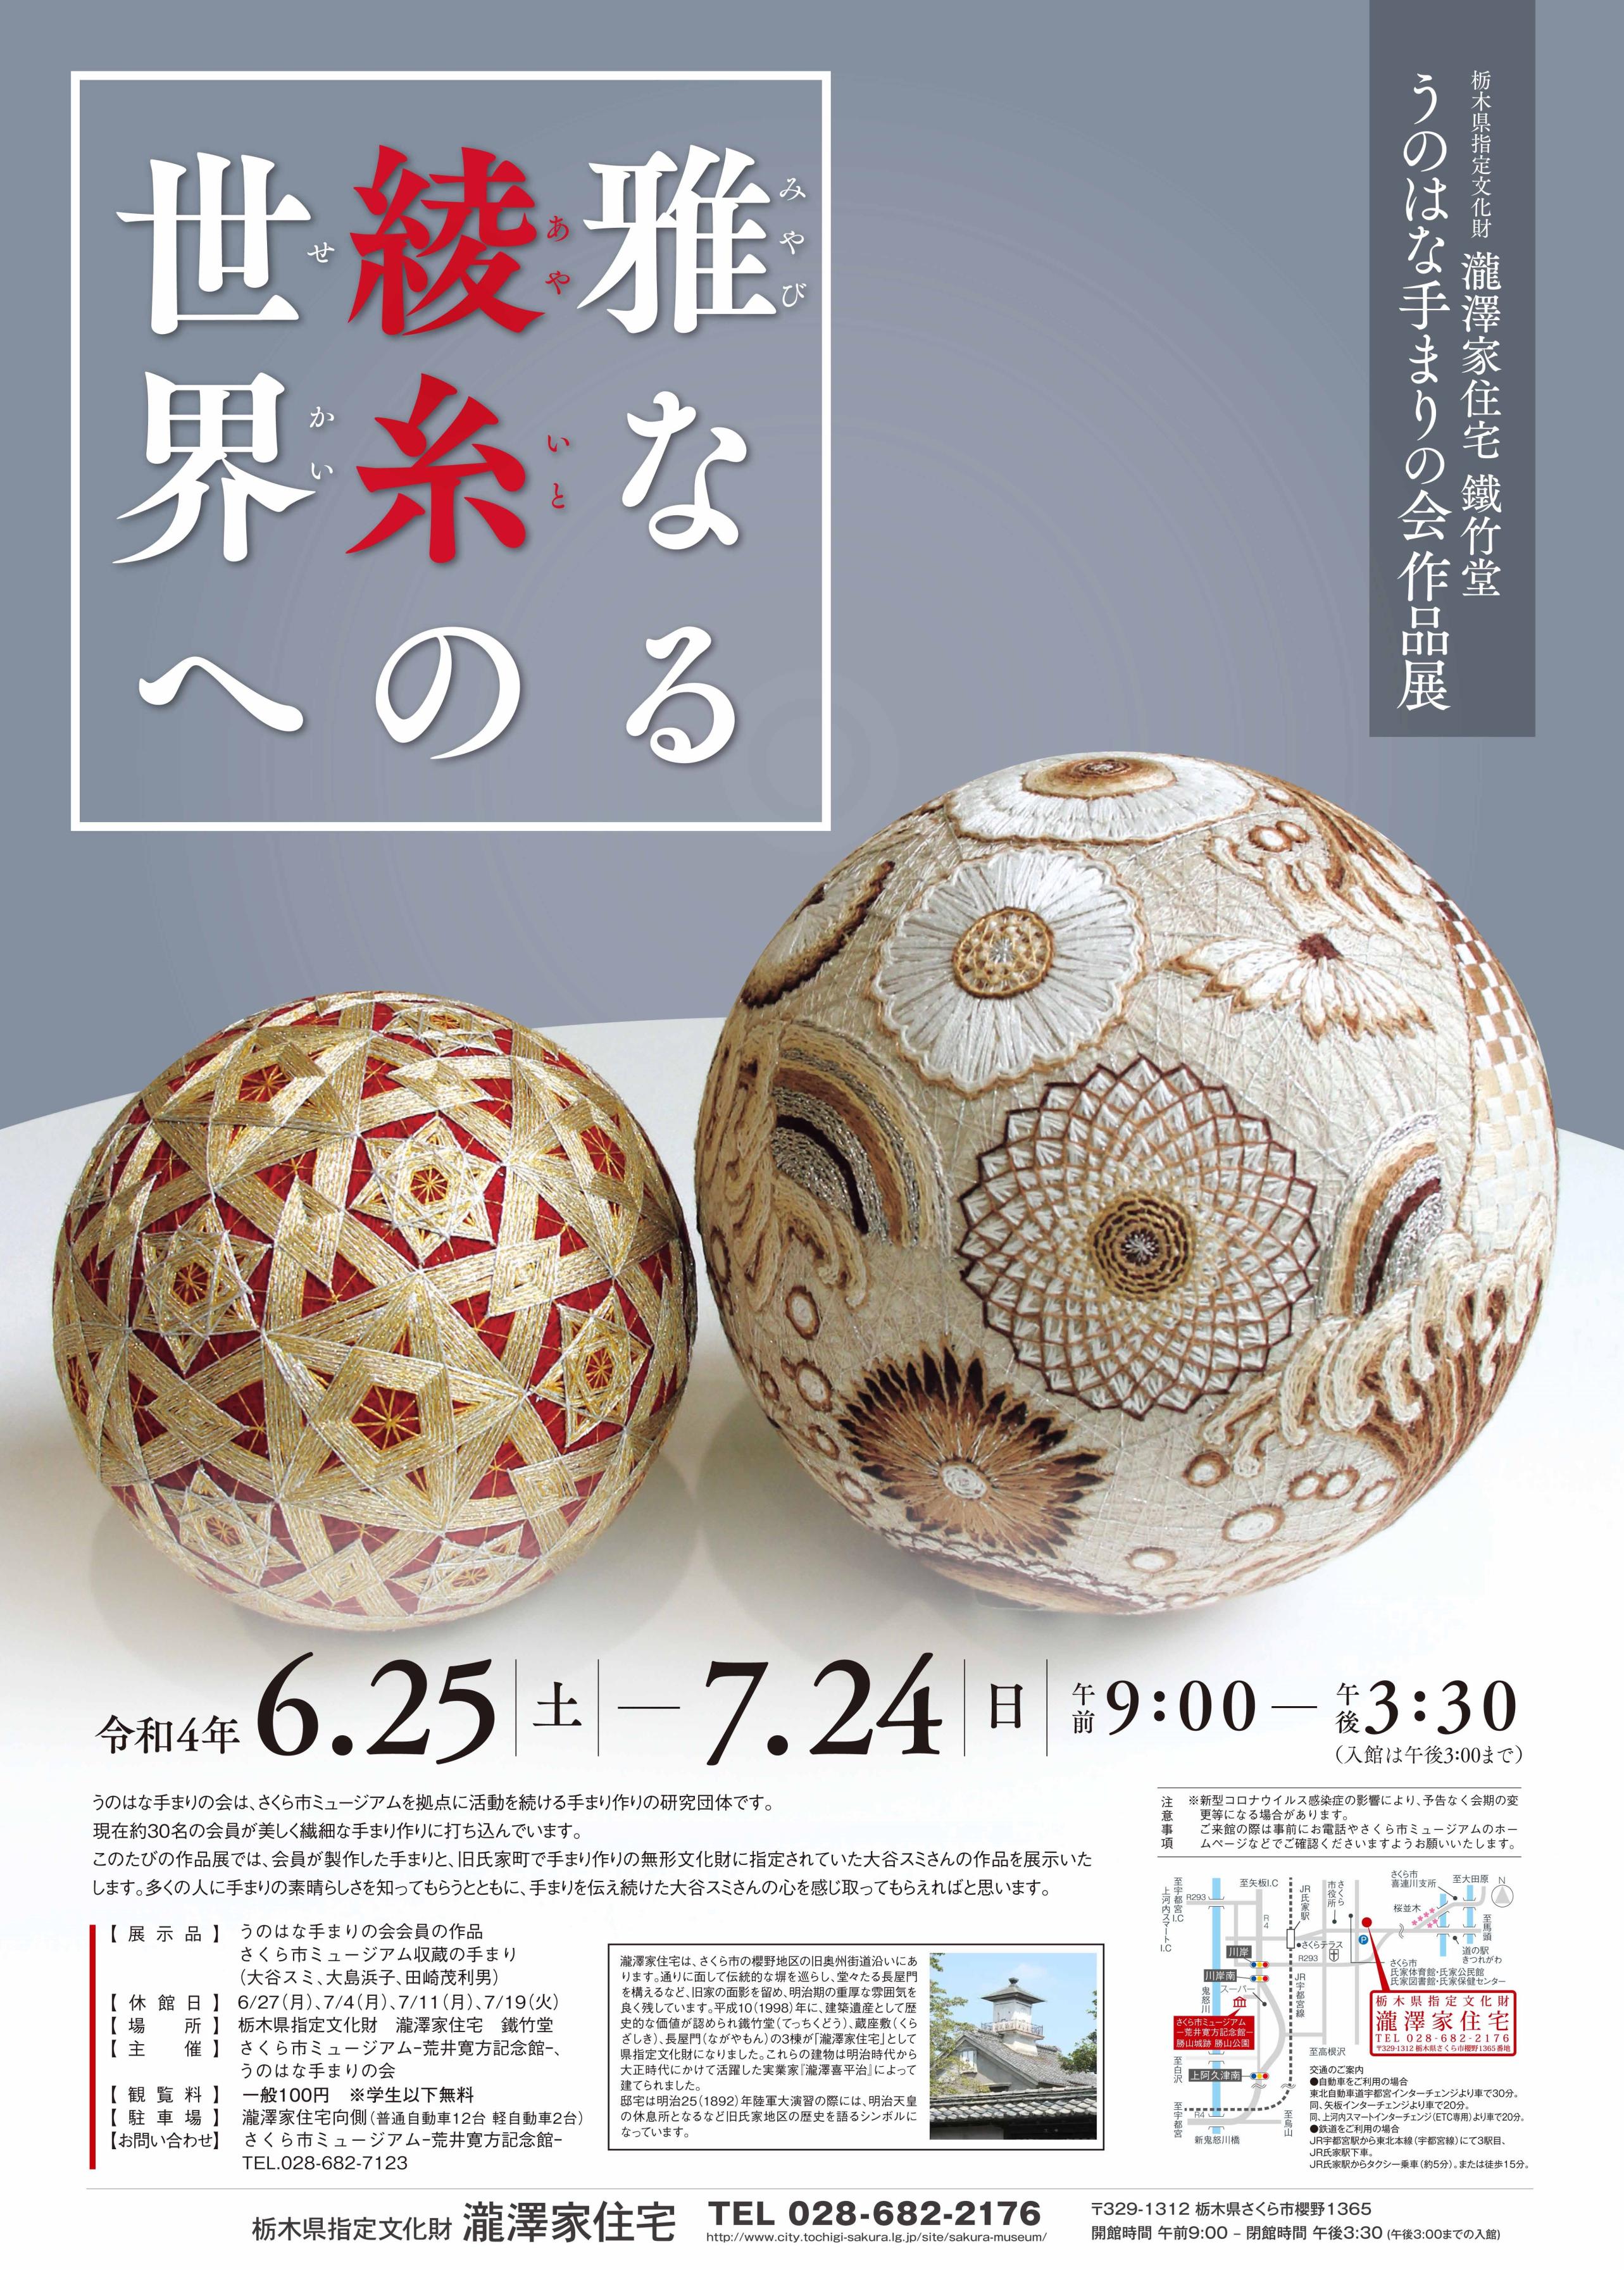 瀧澤家住宅展示　うのはな手まりの会作品展『雅なる綾糸の世界へ』